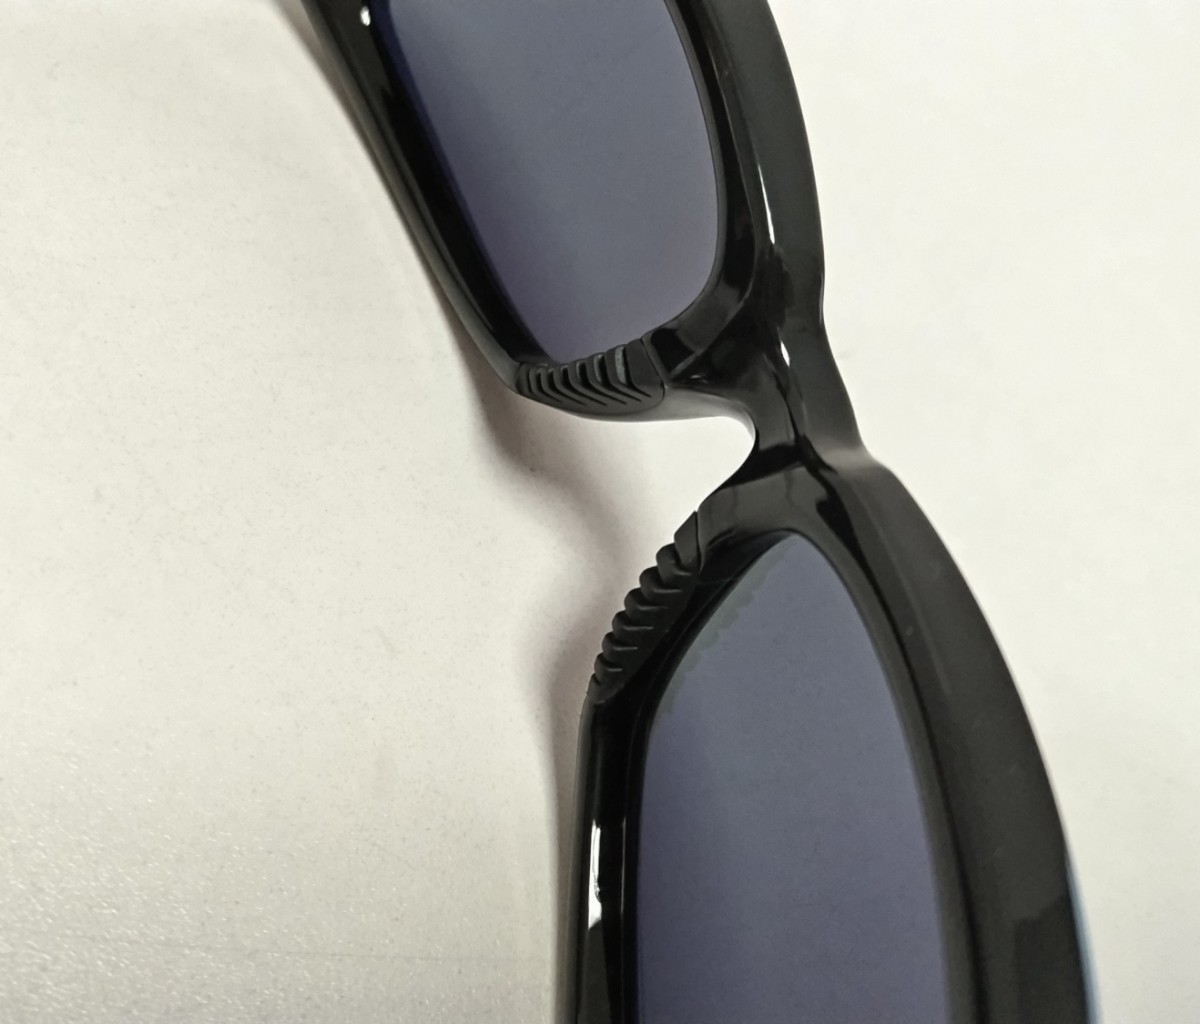  неиспользованный товар   Supreme  стрейч  солнцезащитные очки   черный   наклейка & чехол  прилагается ... ...